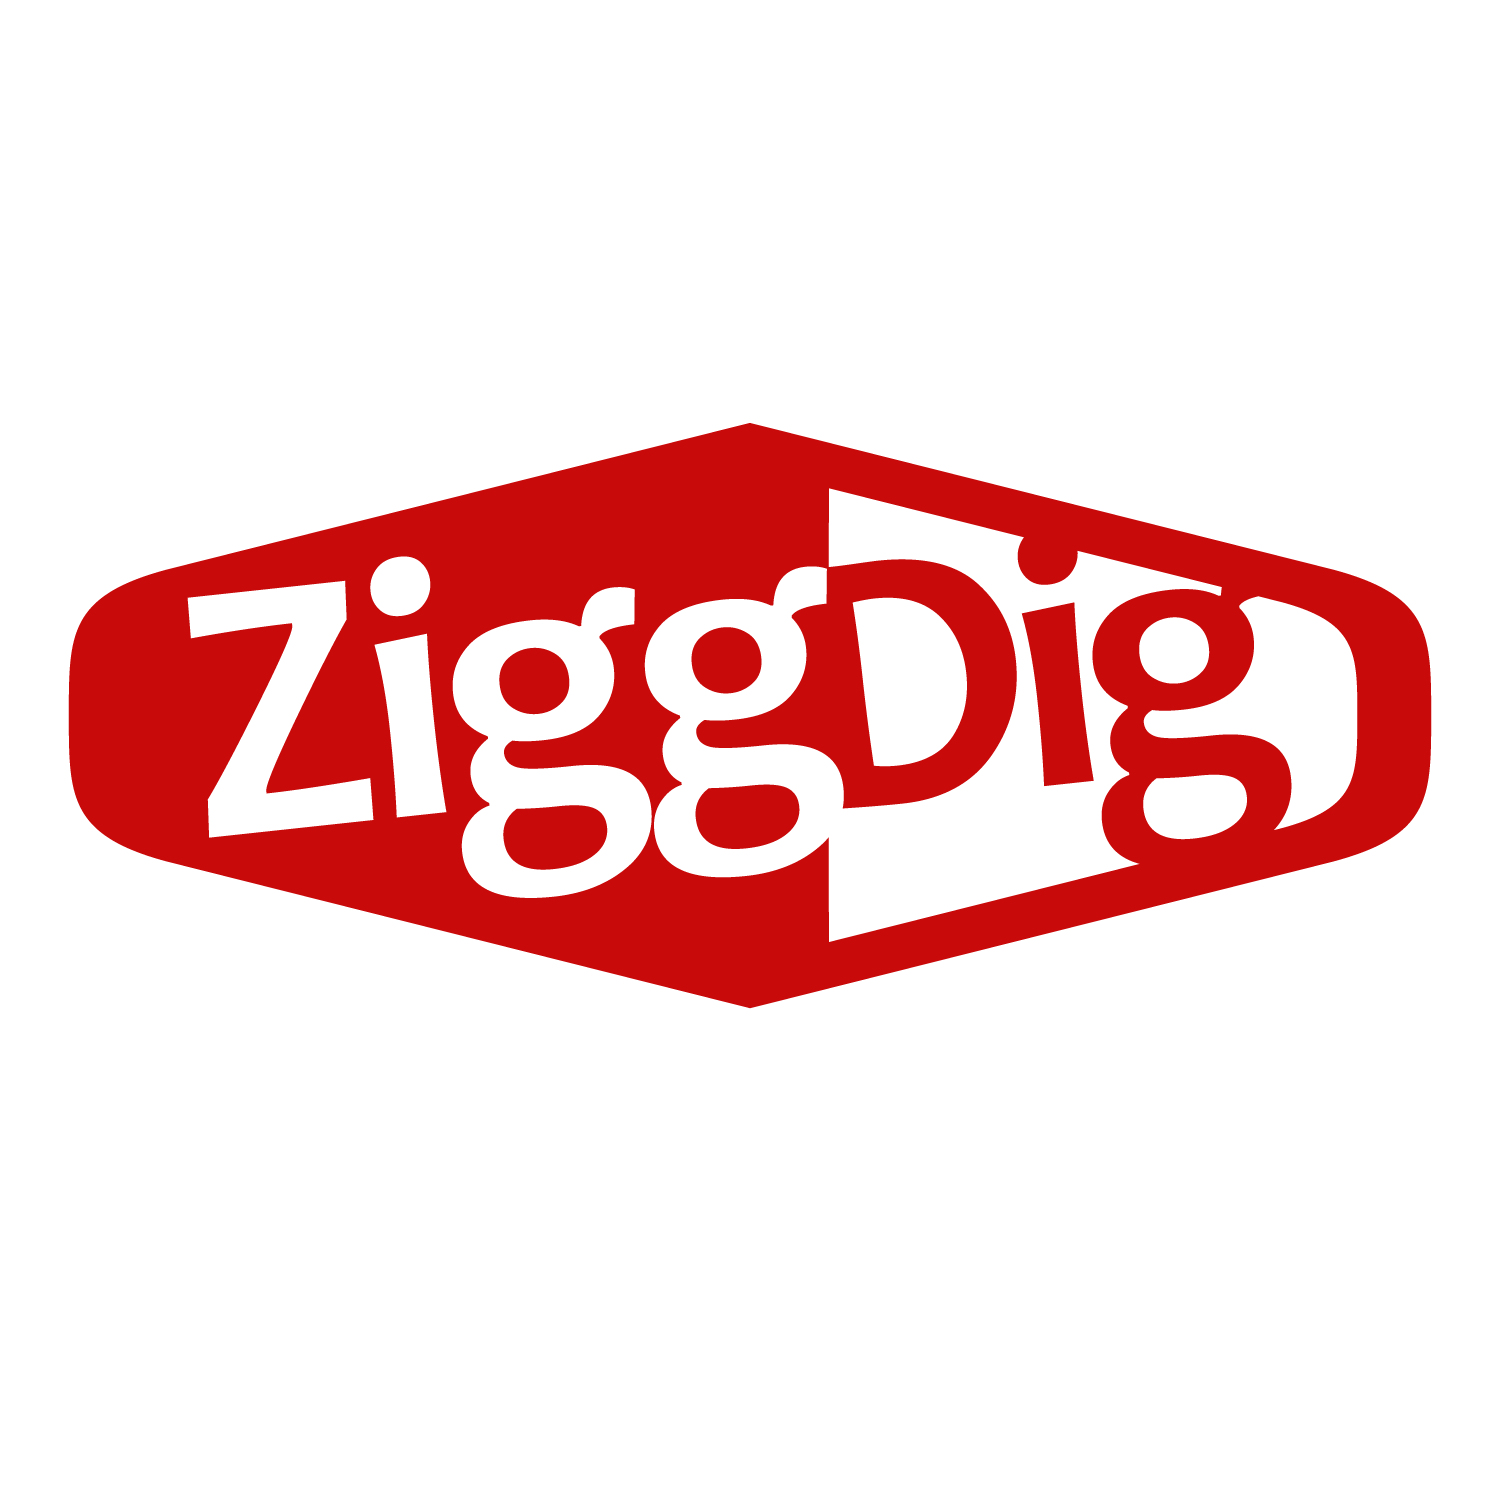 ZiggDig